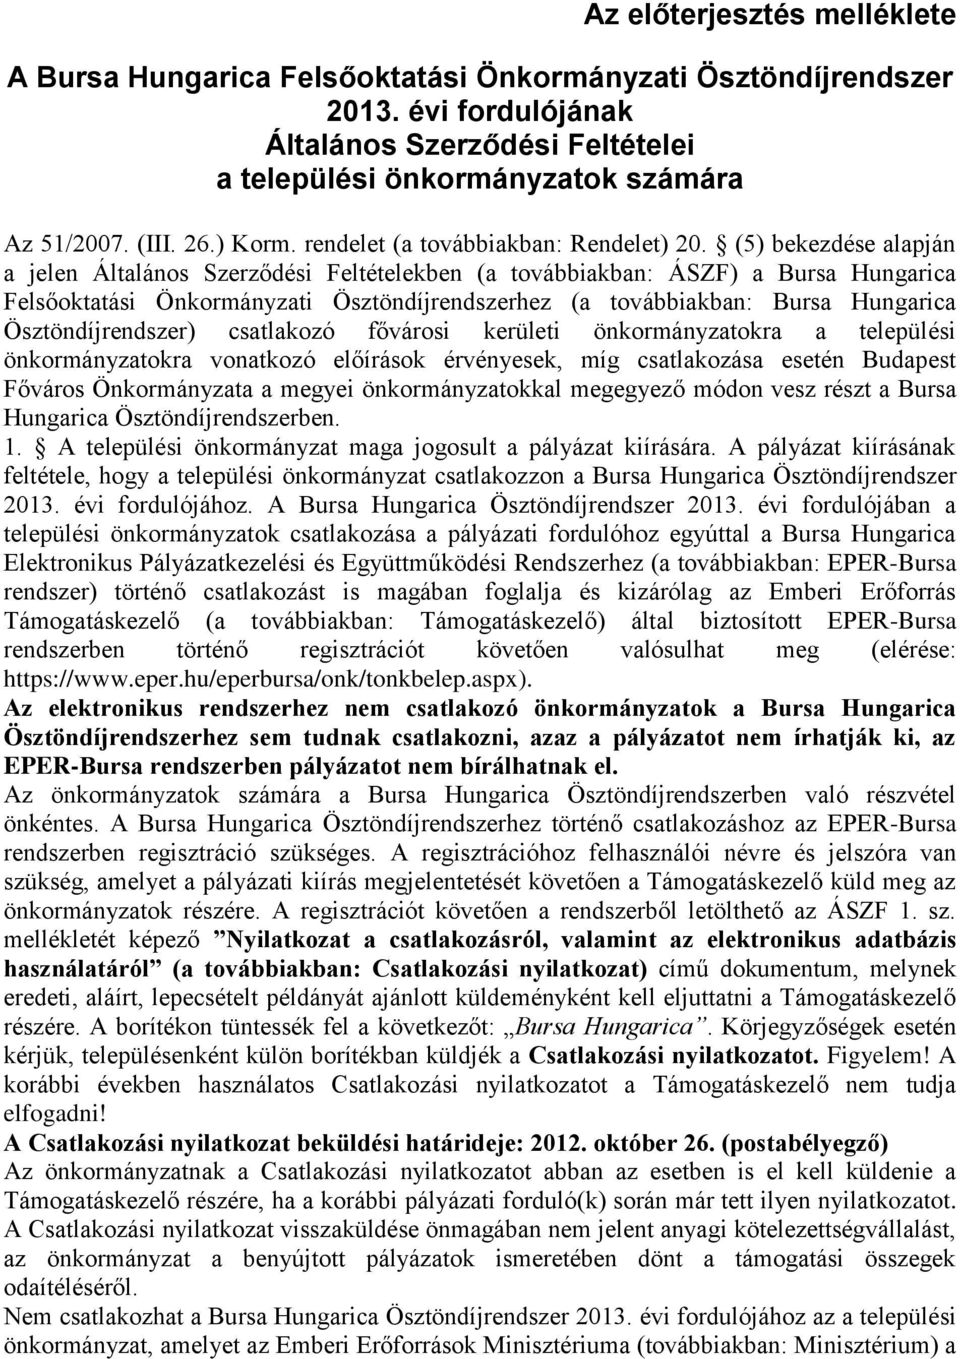 (5) bekezdése alapján a jelen Általános Szerződési Feltételekben (a továbbiakban: ÁSZF) a Bursa Hungarica Felsőoktatási Önkormányzati Ösztöndíjrendszerhez (a továbbiakban: Bursa Hungarica